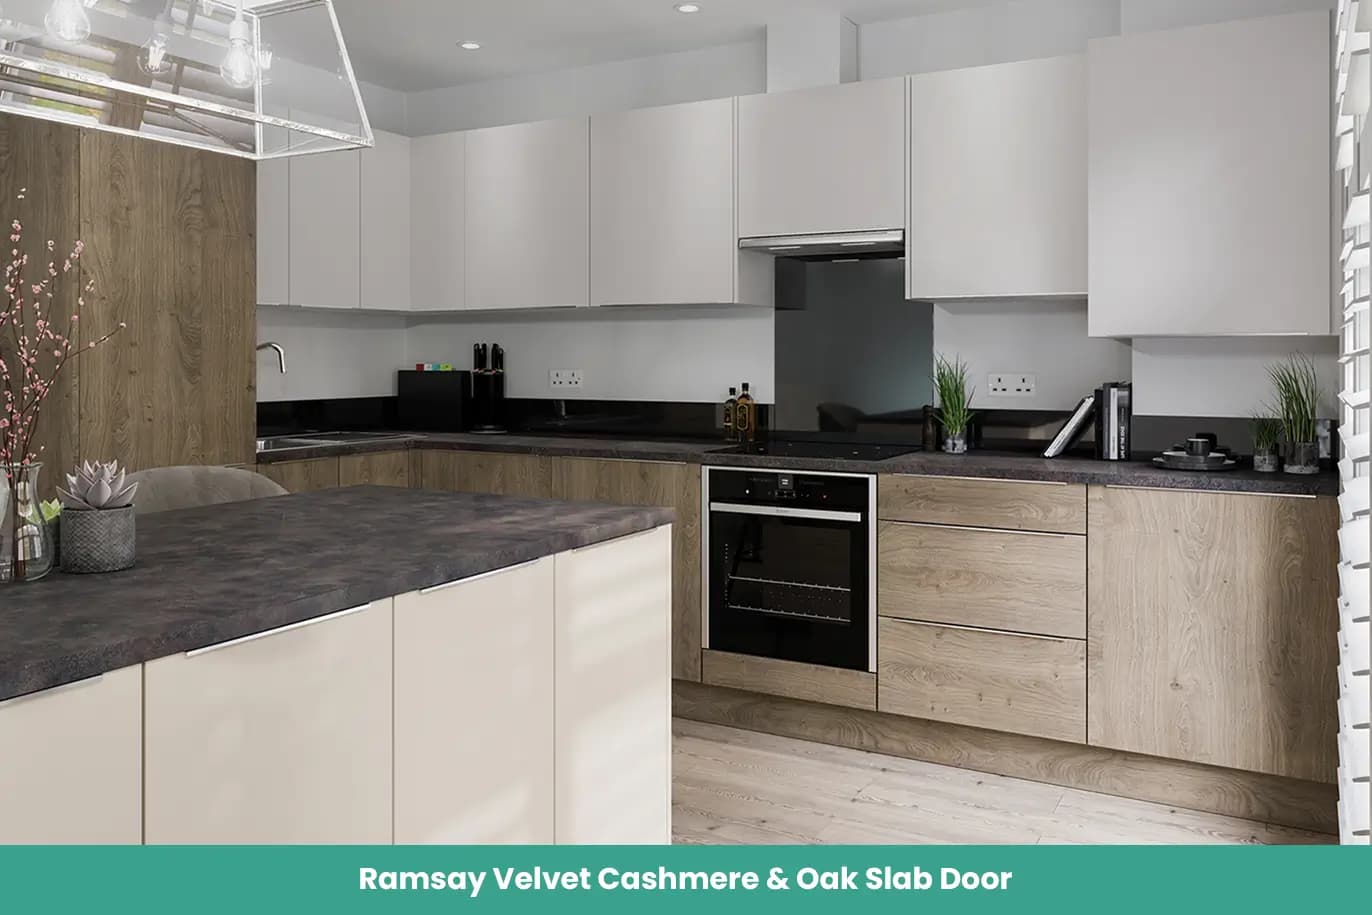 Ramsay Velvet Cashmere Oak Slab Door Kitchen